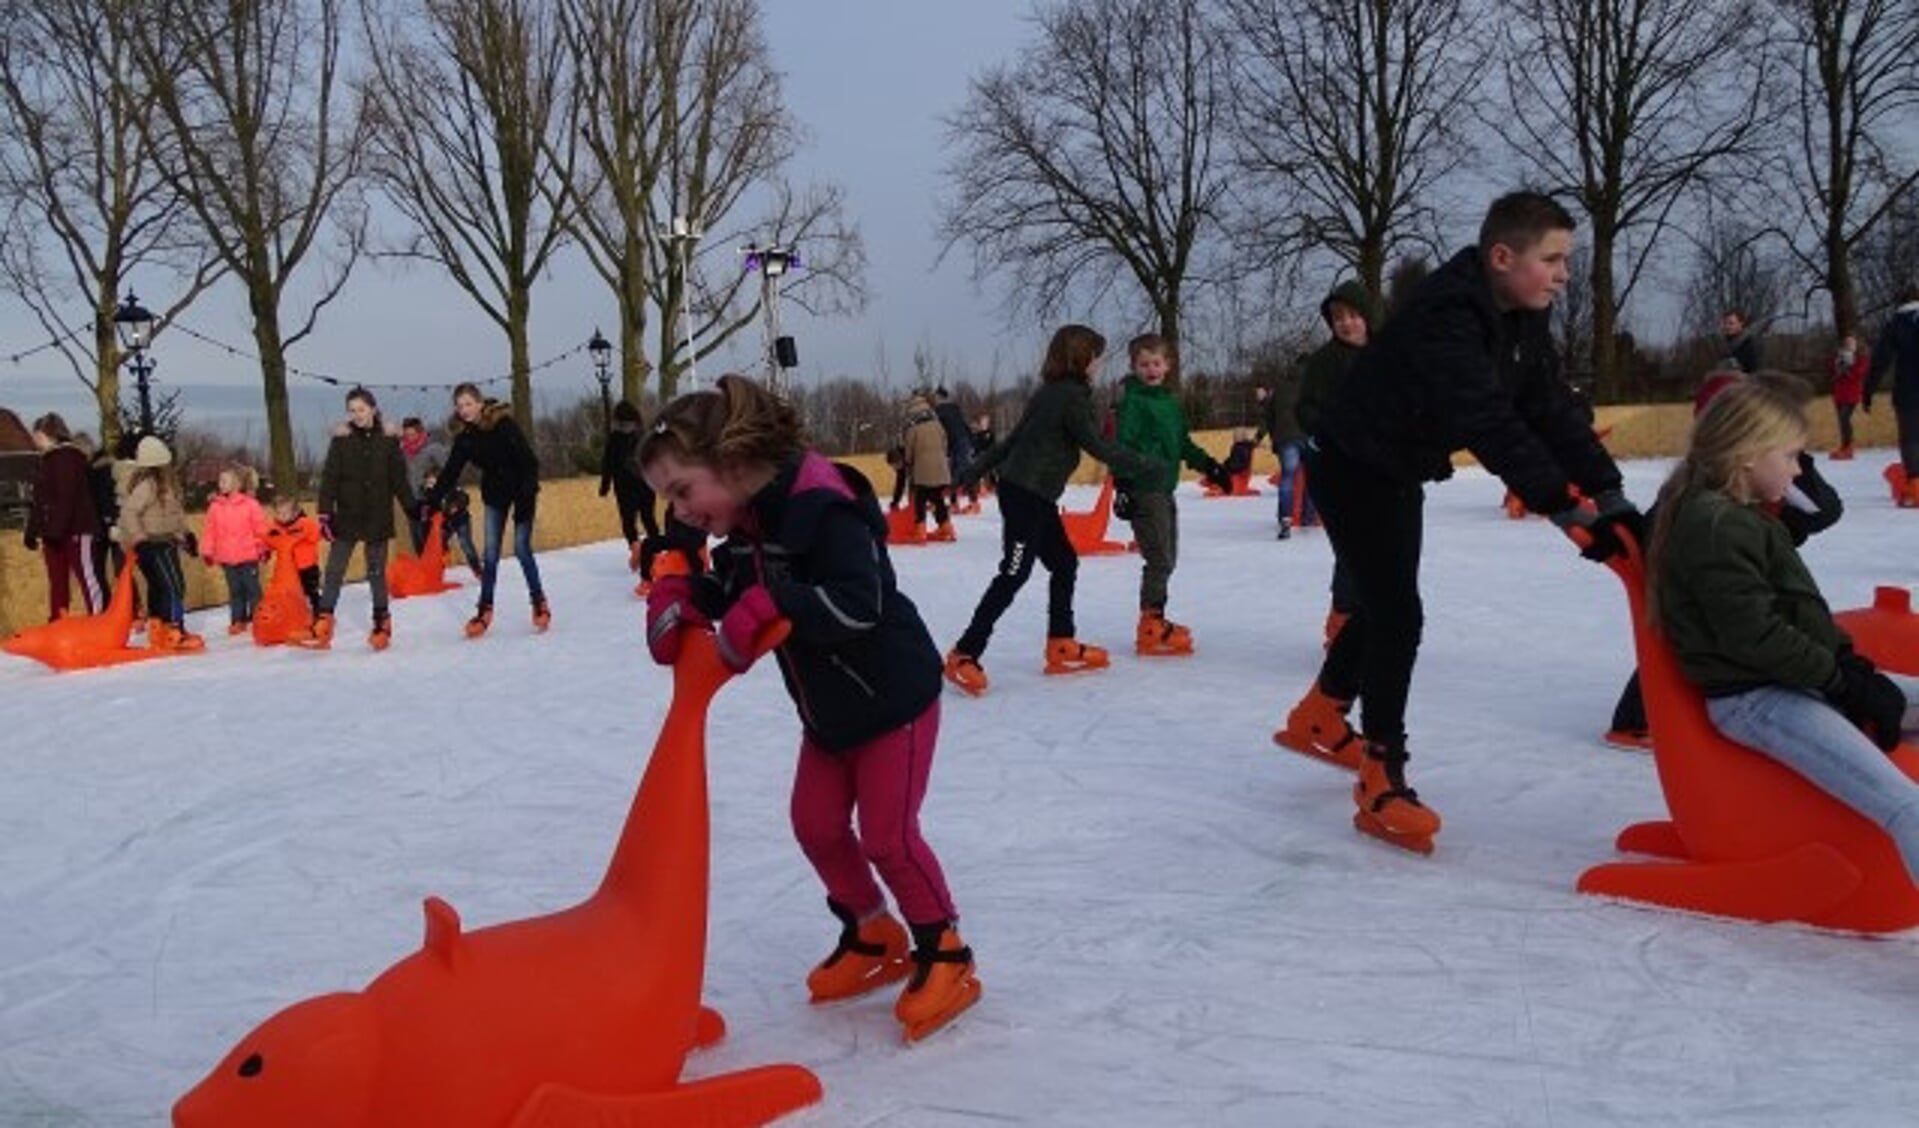 Het was drie weken ijspret op de ijsbaan in Oudewater voor jong en oud. De droom van André Groen dat kinderen het schaatsplezier weer meekrijgen is boven verwachting uitgekomen. (Foto: Margreet Nagtegaal)